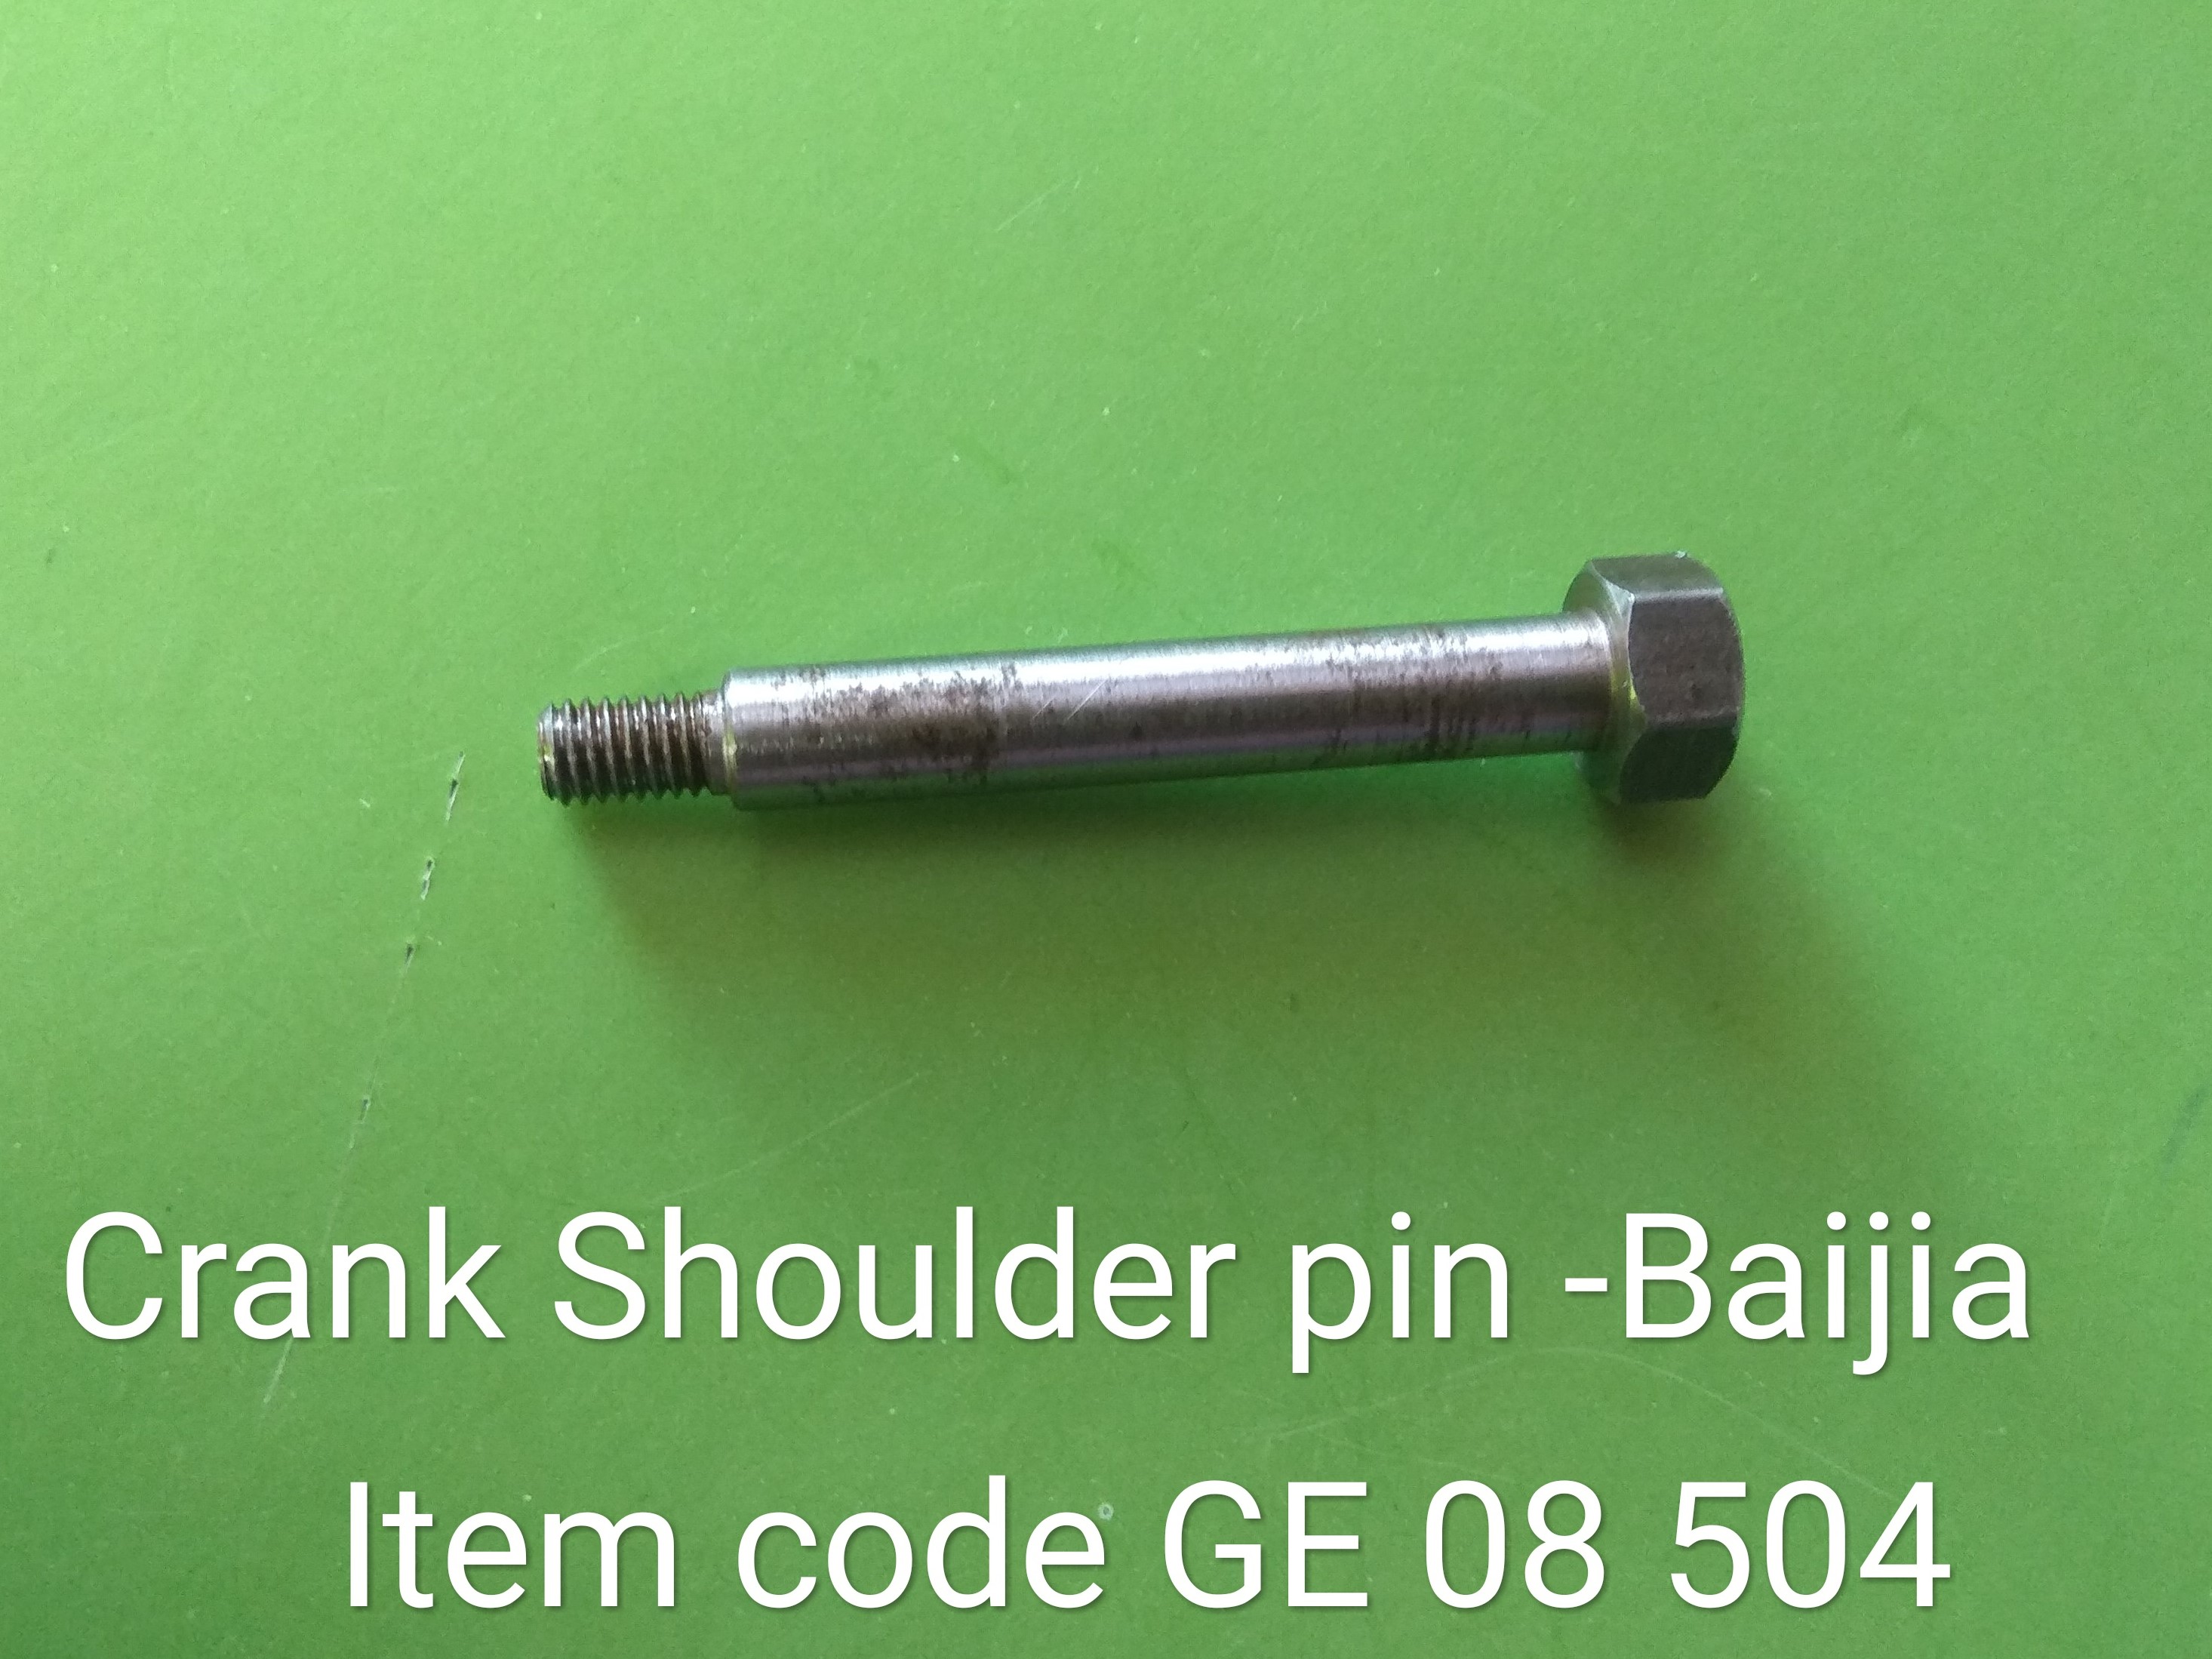 GE_08_504_Crank_Shoulder_Pin_1_18.jpg